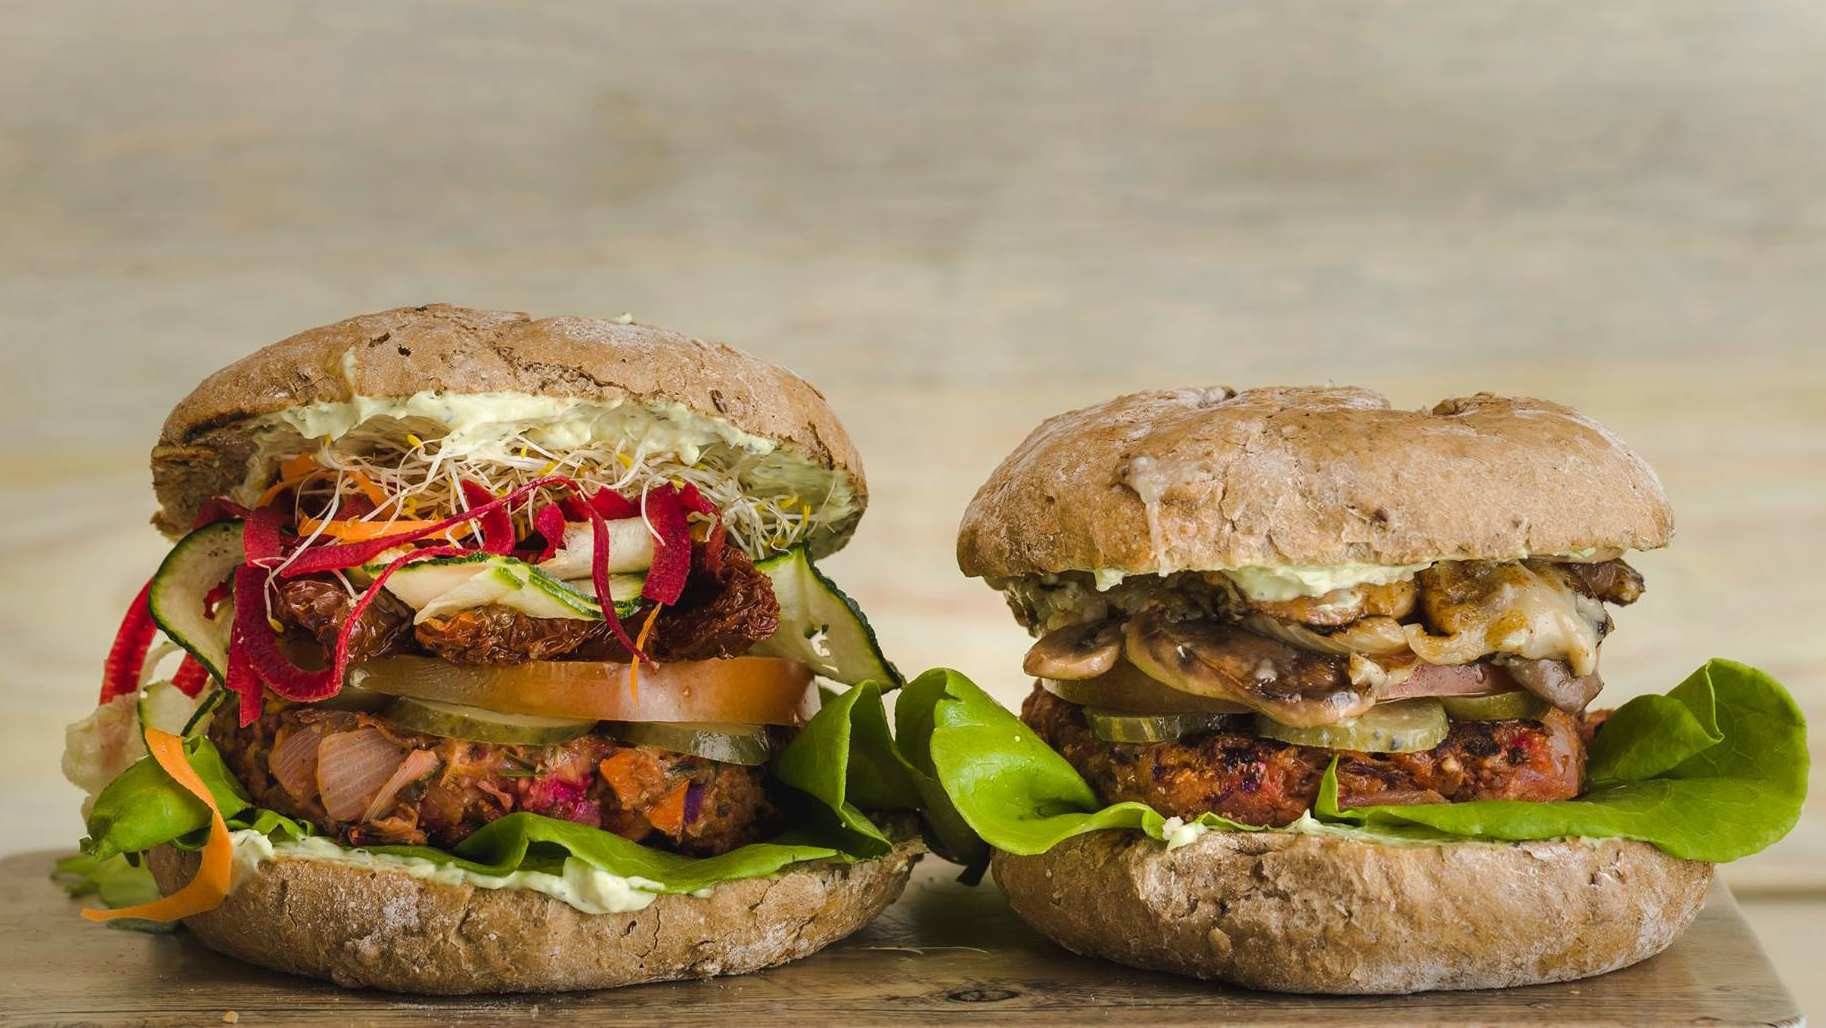 Las hamburguesas de Viva Burger son el plato estrella, pero la carta está llena de recetas veganas y sin gluten muy creativas. ©VivaBurger